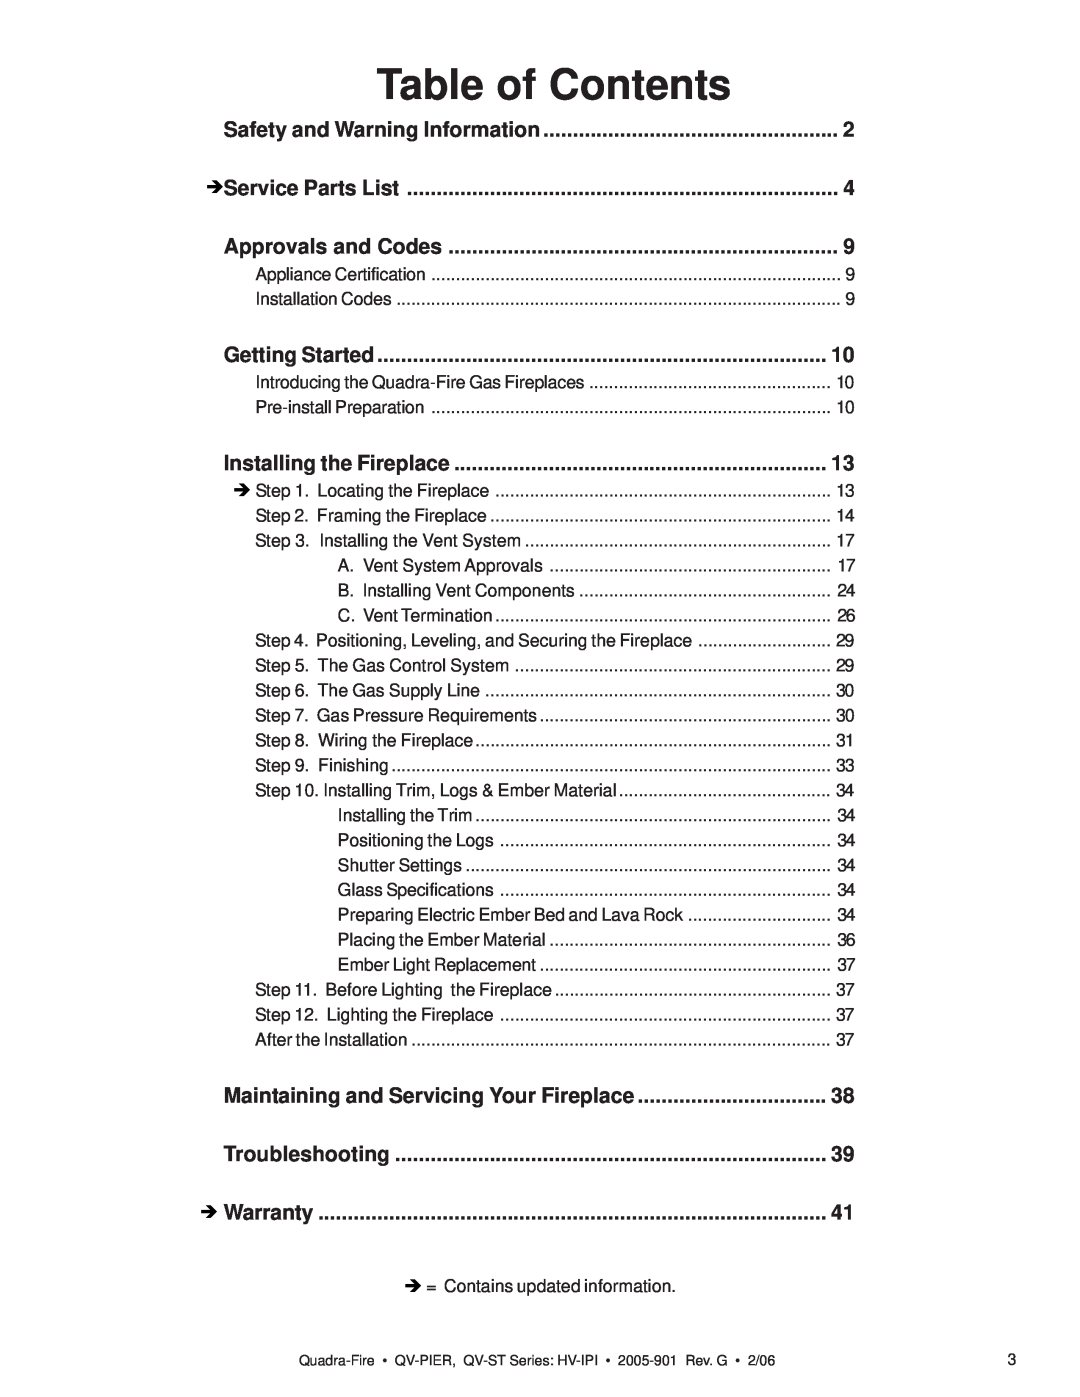 Quadra-Fire QV-ST, QV-PIER owner manual Table of Contents 